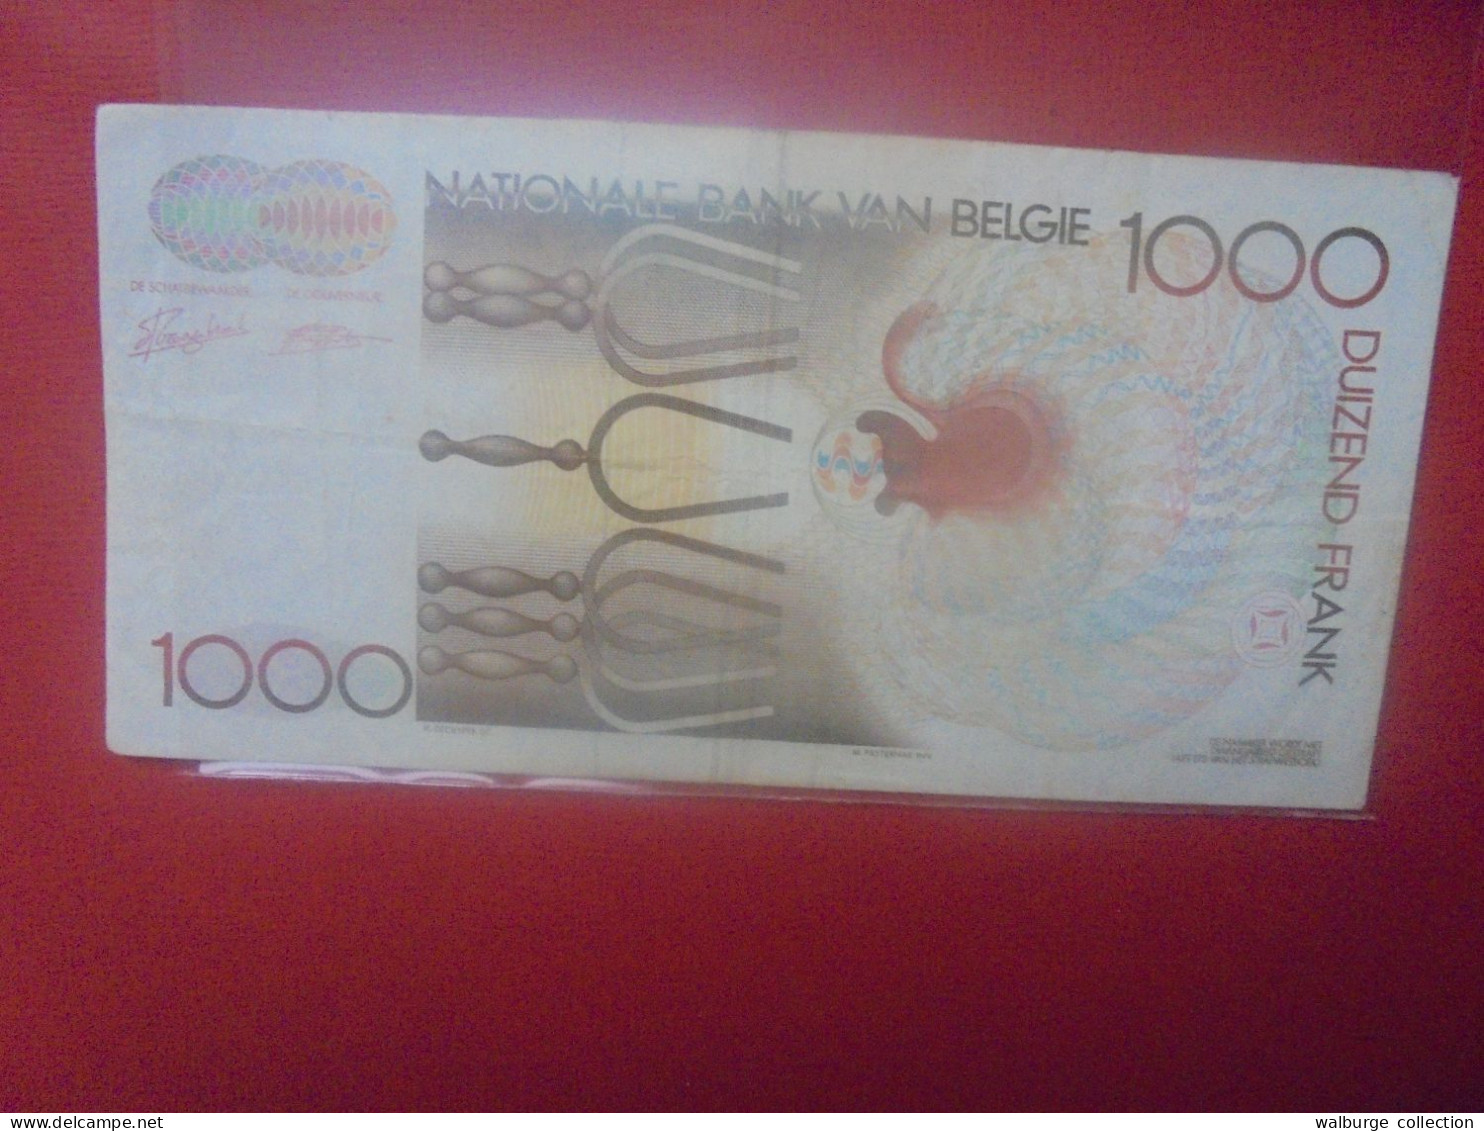 BELGIQUE 1000 Francs 1981-1997 Circuler (B.31) - 1000 Frank